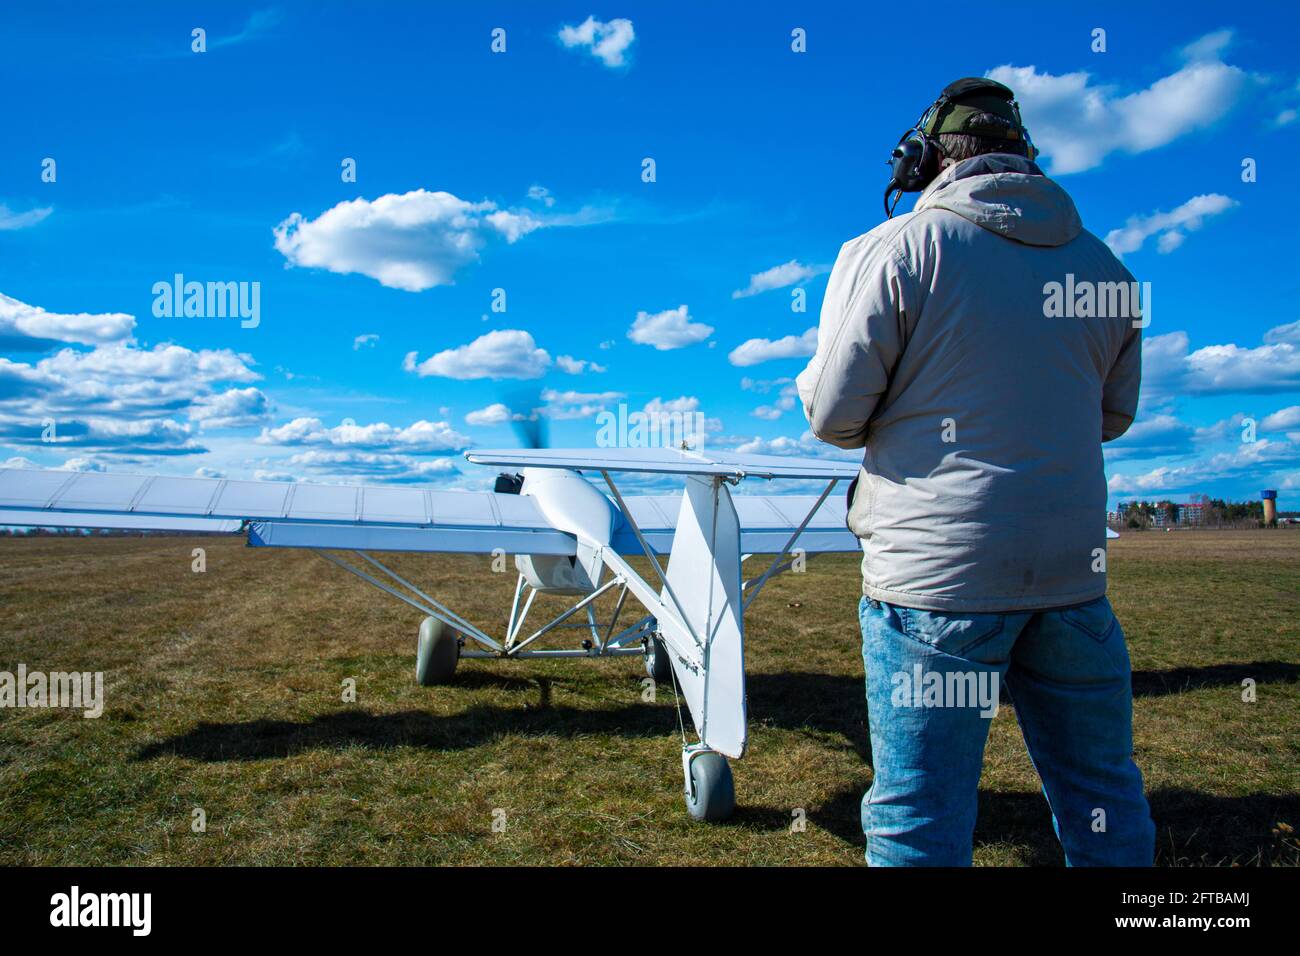 Ein Operator mit einem unbemannten Flugzeug auf der Start- und Landebahn. Ein Mann fliegt ein unbemanntes Flugzeug, das für den Einsatz in der Landwirtschaft entwickelt wurde. Stockfoto